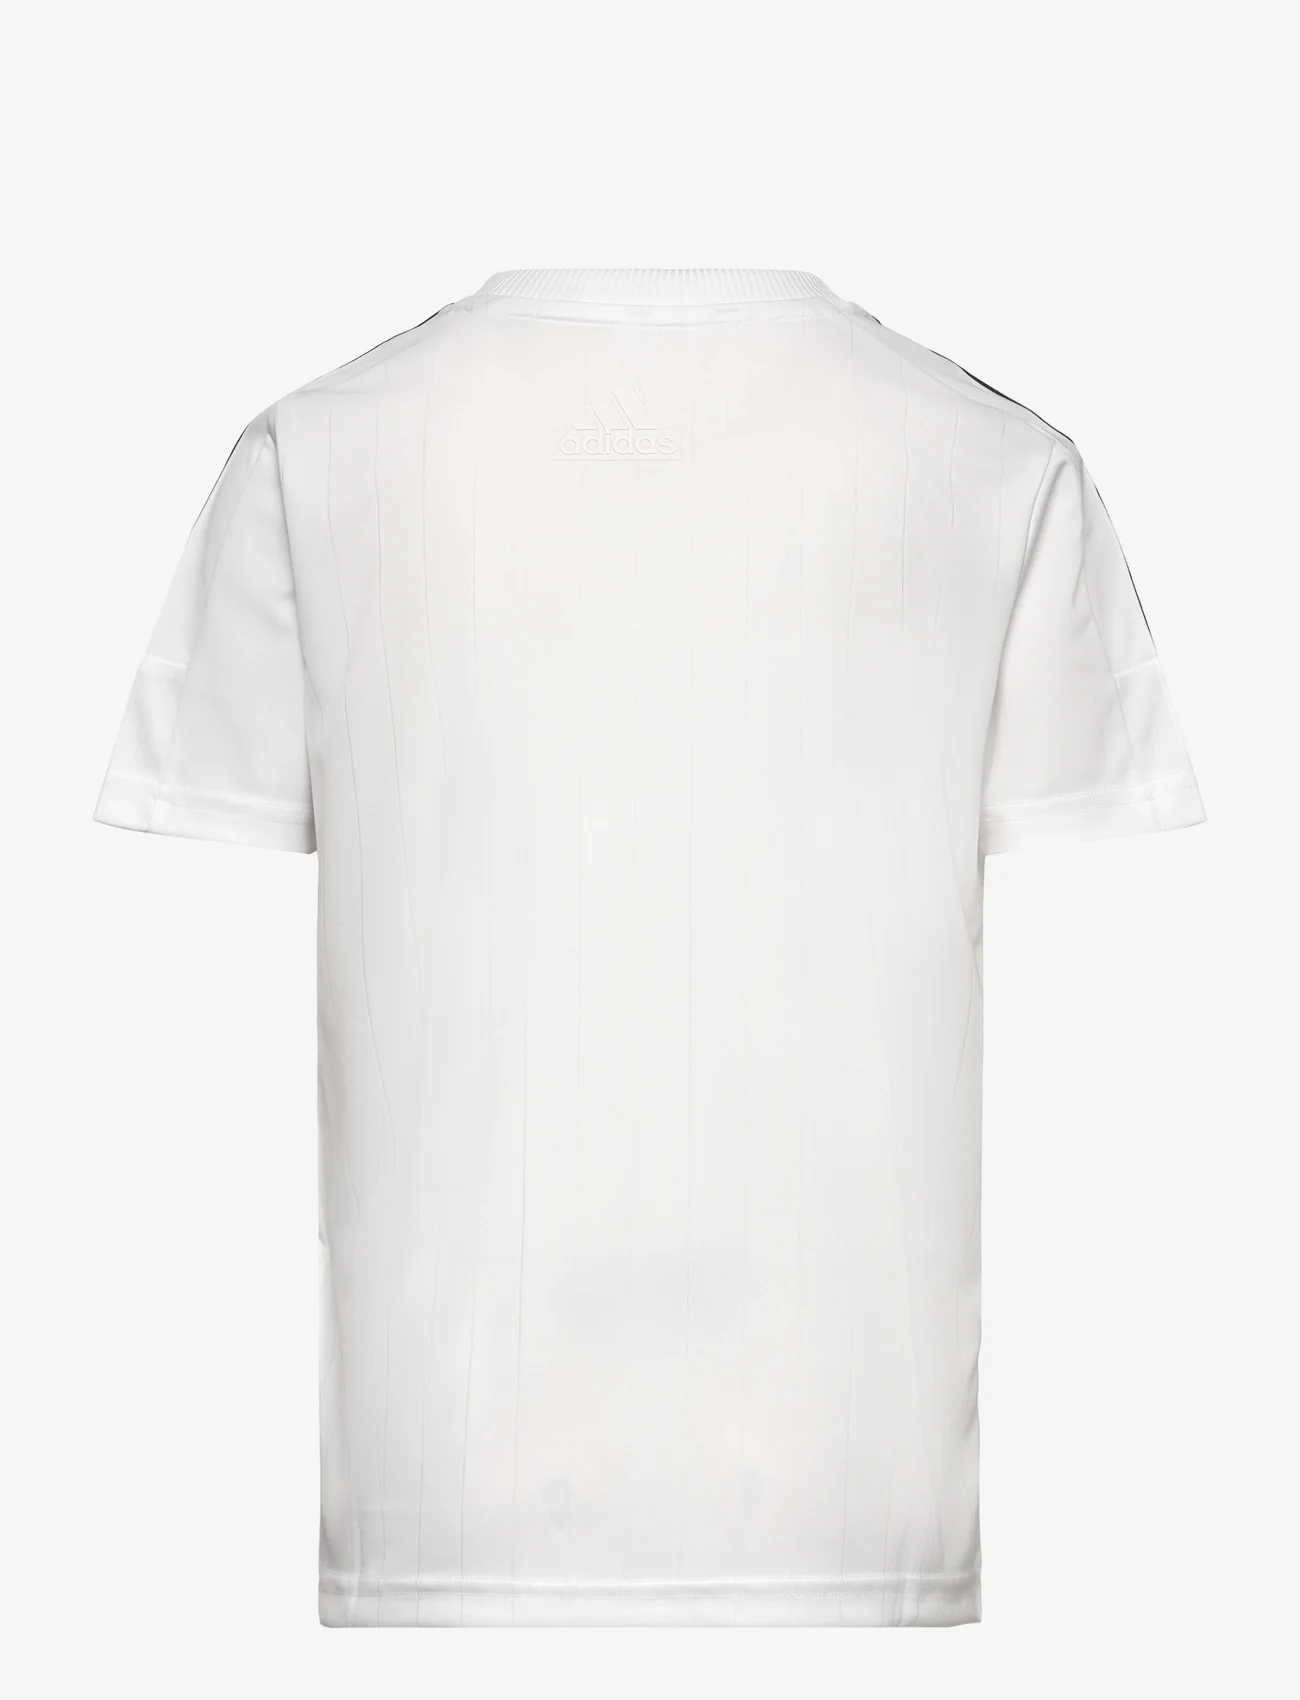 adidas Performance - J HOT UT TEE - kortermede t-skjorter - white/black - 1